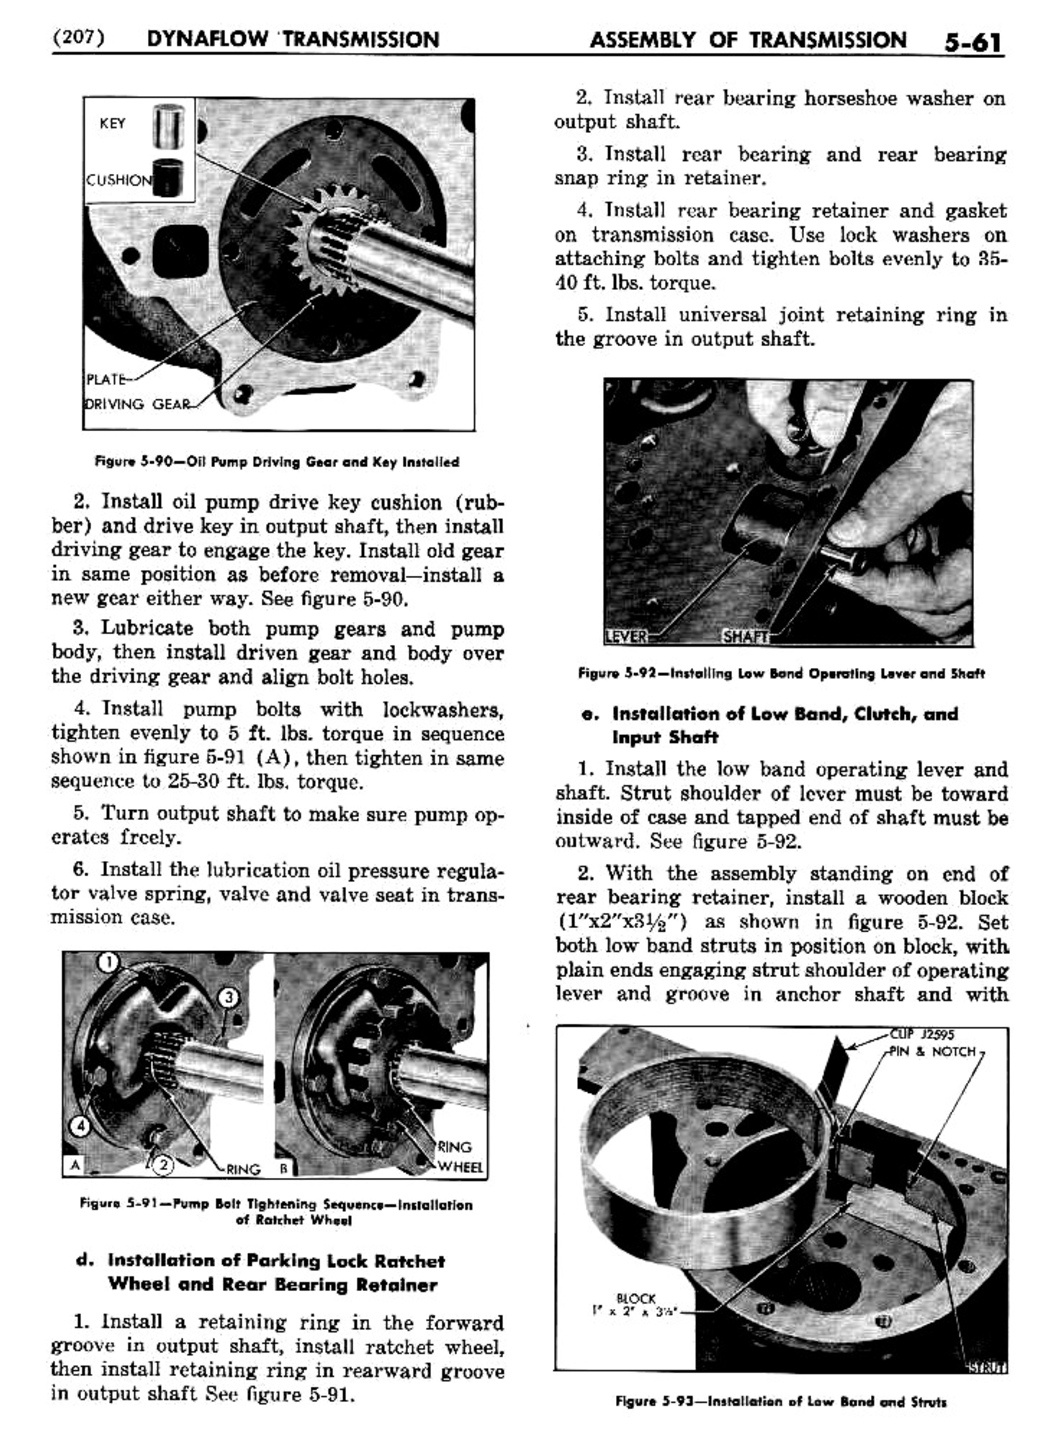 n_06 1956 Buick Shop Manual - Dynaflow-061-061.jpg